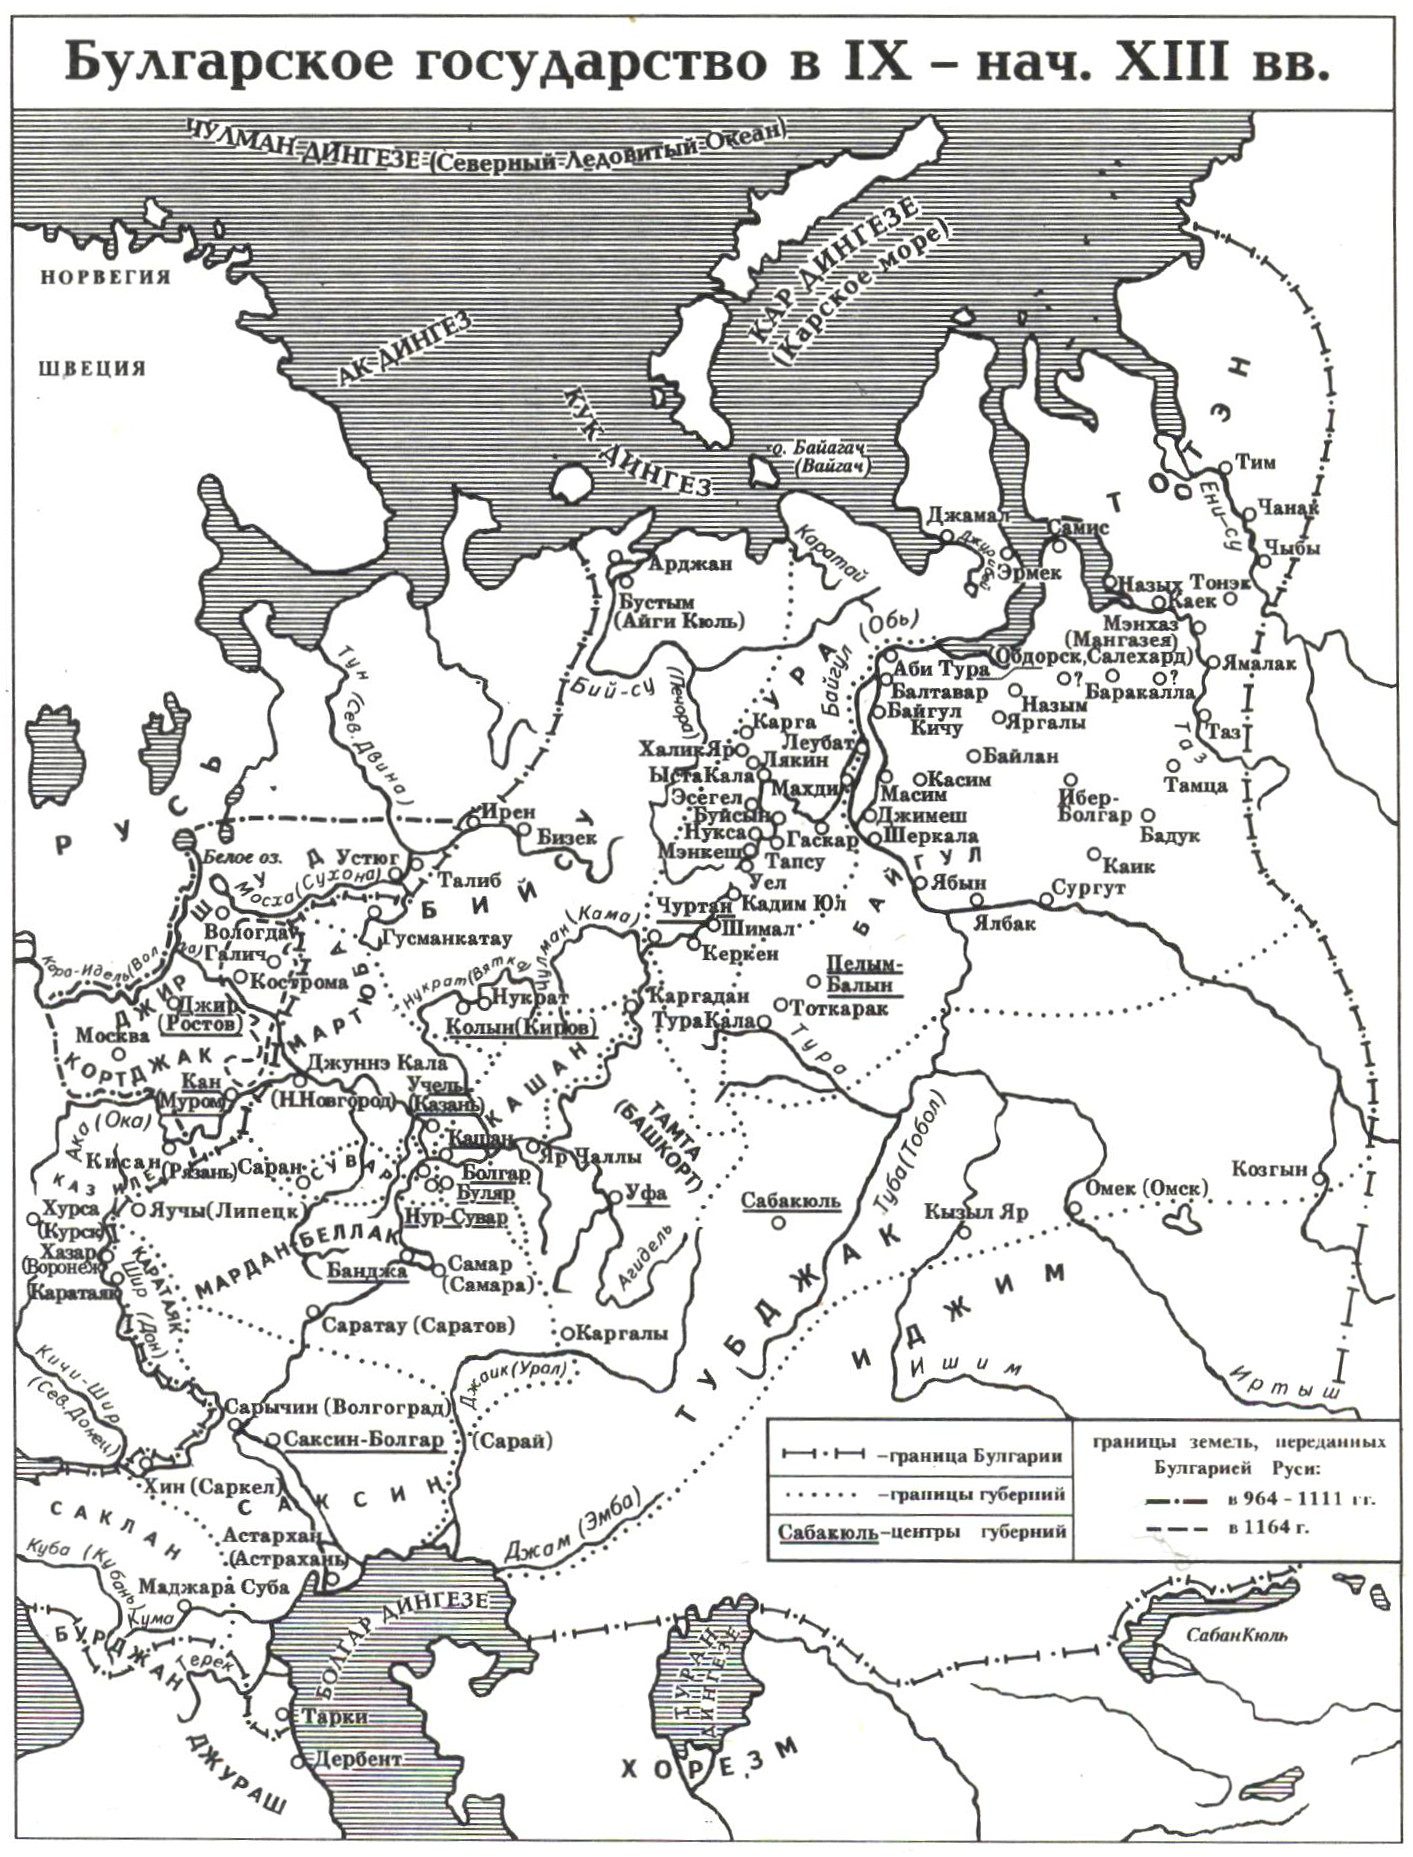 دولة البلغار في القرن التاسع - أوائل القرن الثالث عشر